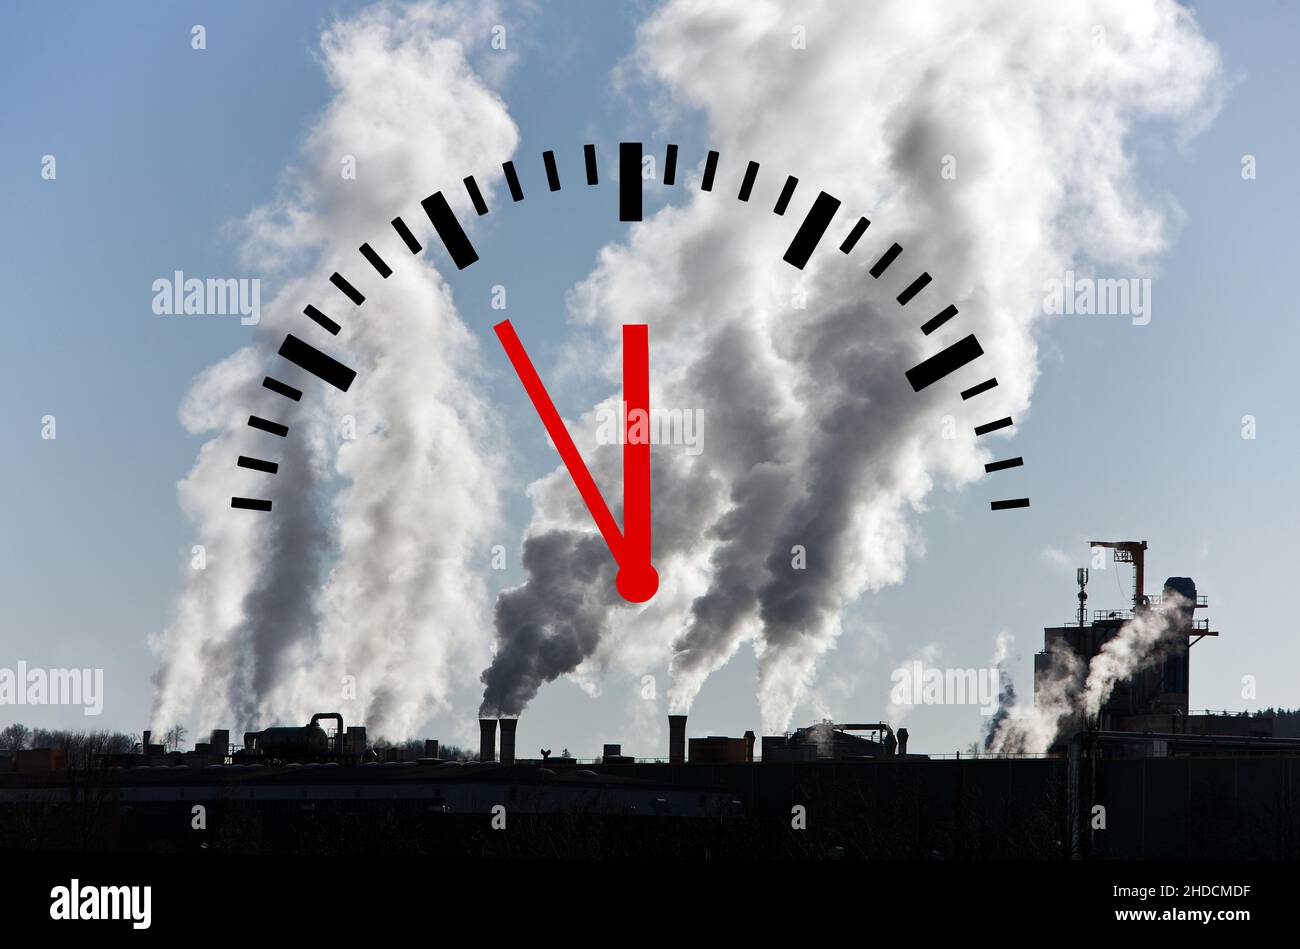 Kohlekraftwerk, Umweltverschmutzung, Schadstoffausstoss, Uhr zeigt 5 vor 12, Foto de stock